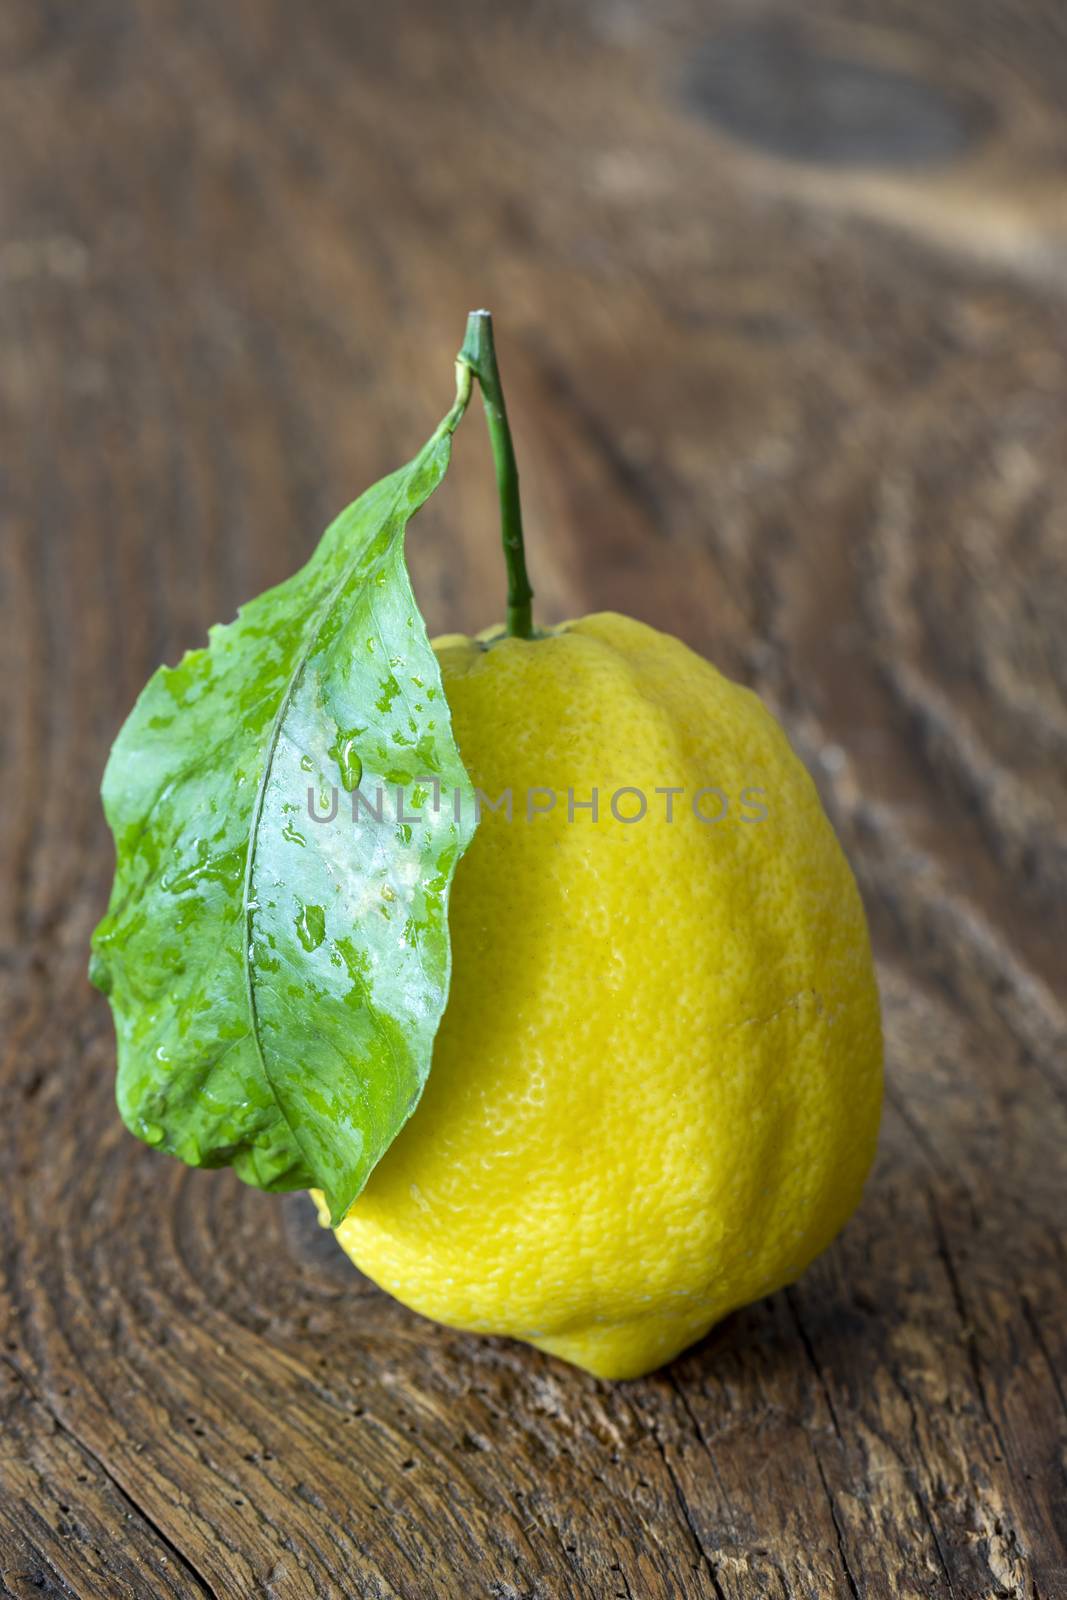 amalfi lemon by bernjuer